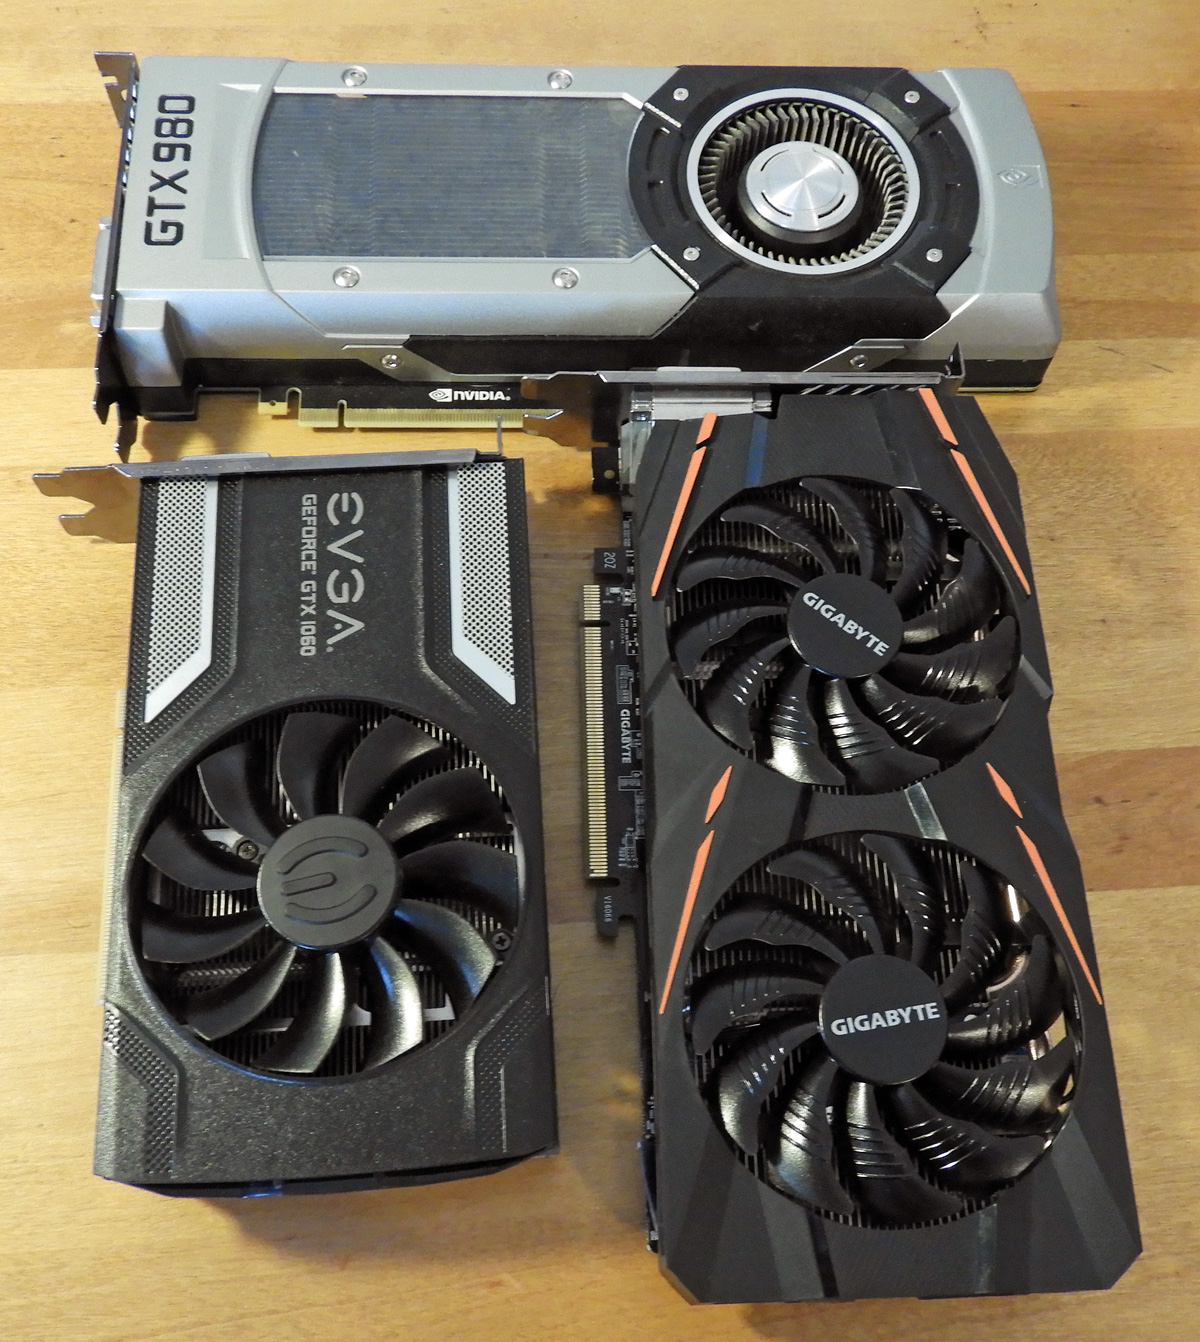 The Retro - the RX 580-8 GB vs. the GTX 980-4GB vs. the GTX 1060-6 GB